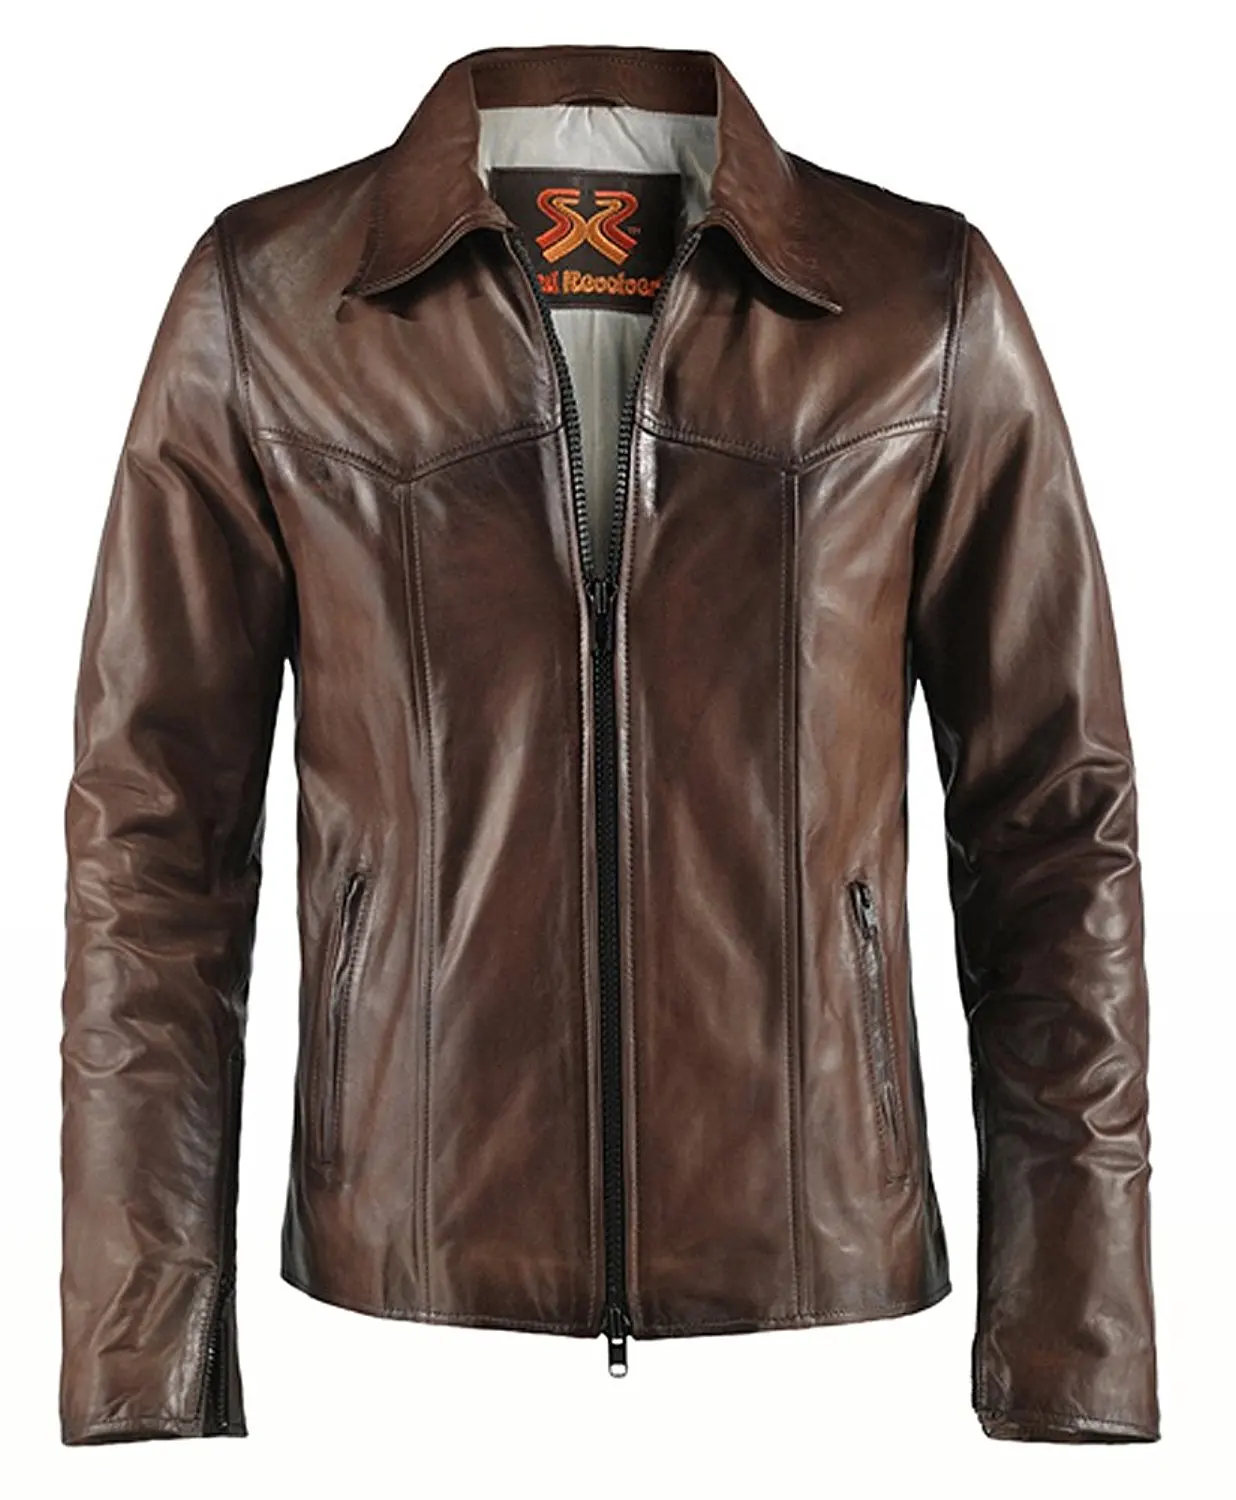 Куртка кожаная мужская россия. Pronto Classic кожаные куртки. Mustang Brown Leather Jacket 2014. Real Leather куртки мужские. Кожаная куртка классика мужская.